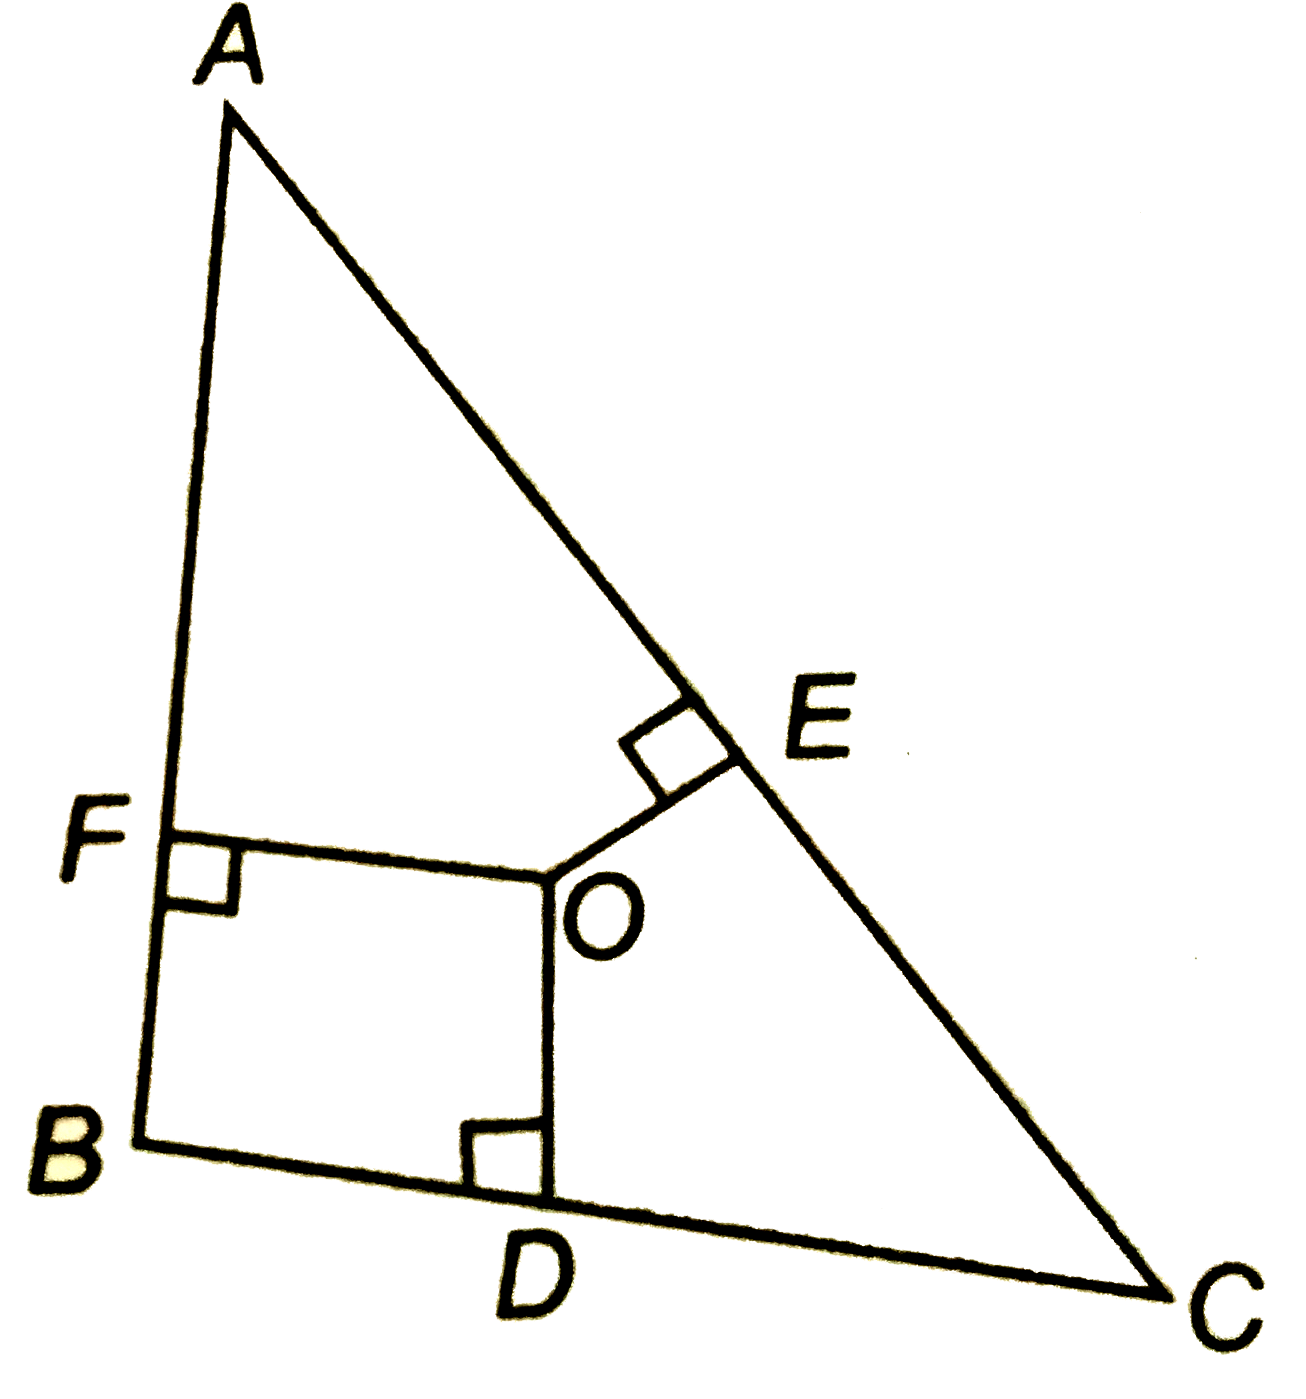 आकृति में DeltaABC के अभ्यंतर में स्थित कोई बिंदु O है तथा  OD bot BC, OEbotAC और  OFbotAB  है दर्शाइए कि   (i) OA^2+OB^2+OC^2-OD^2-OE^2-OF^2=AF^2+BD^2+CE^2   (ii) AF^2+BD^2+CE^2=AE^2++CD^2+BF^2